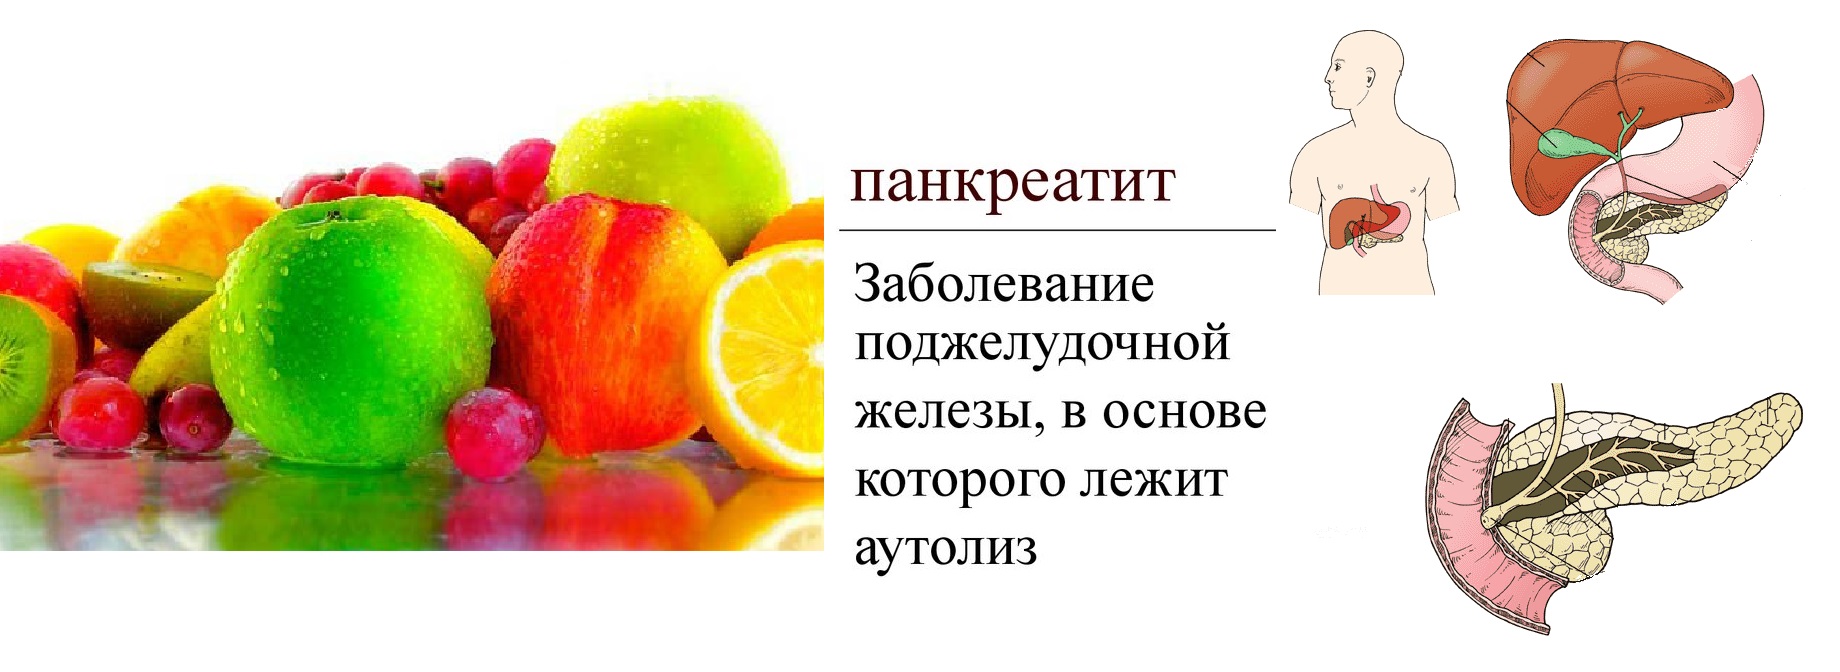 Панкреатит и фрукты